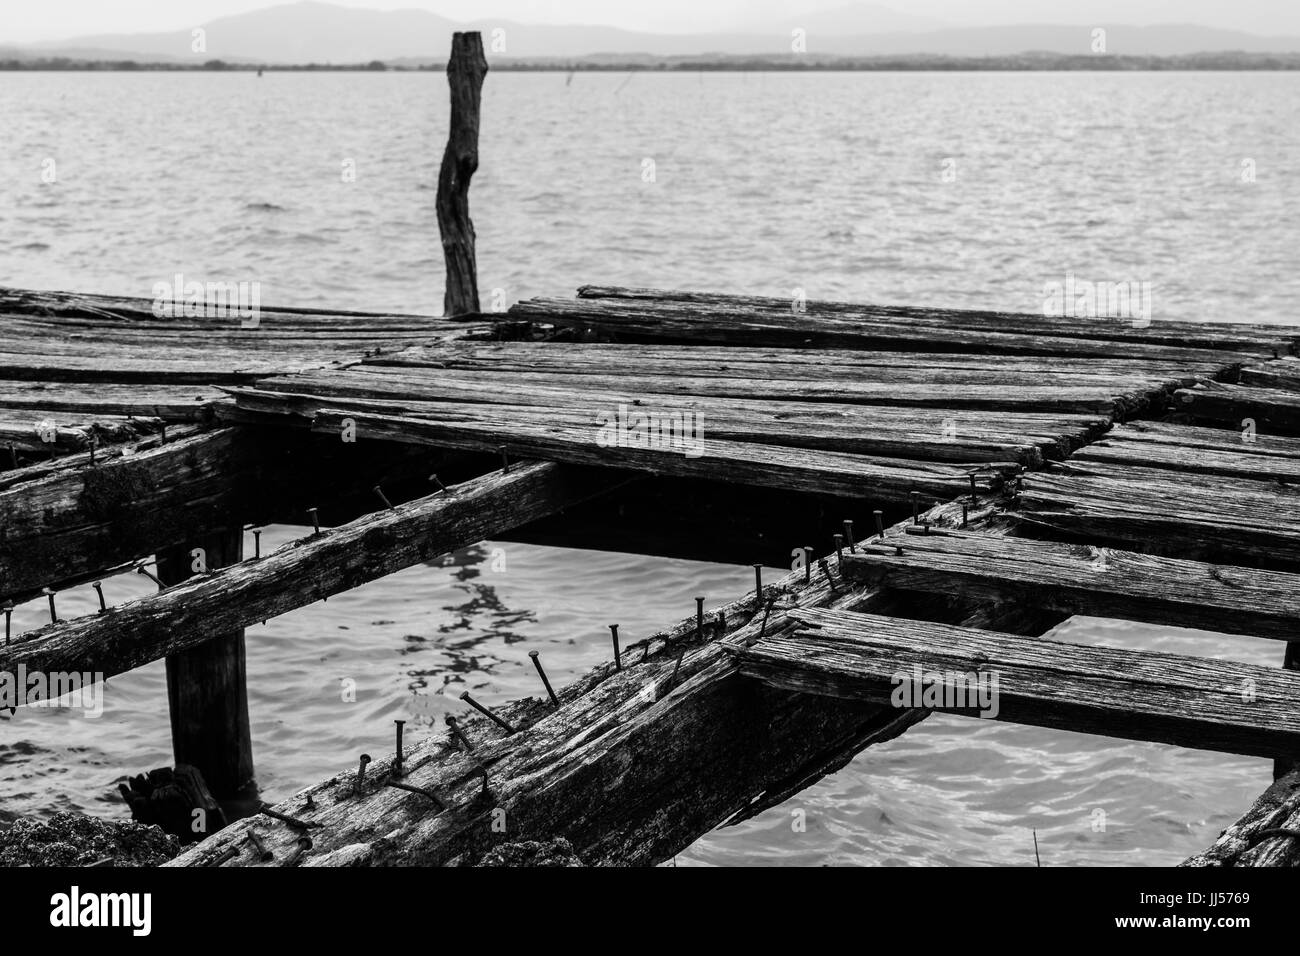 Details zu einer alten, gebrochenen Pier an einem See, mit Nägeln und abgenutzt und fehlende Holzplatten Stockfoto